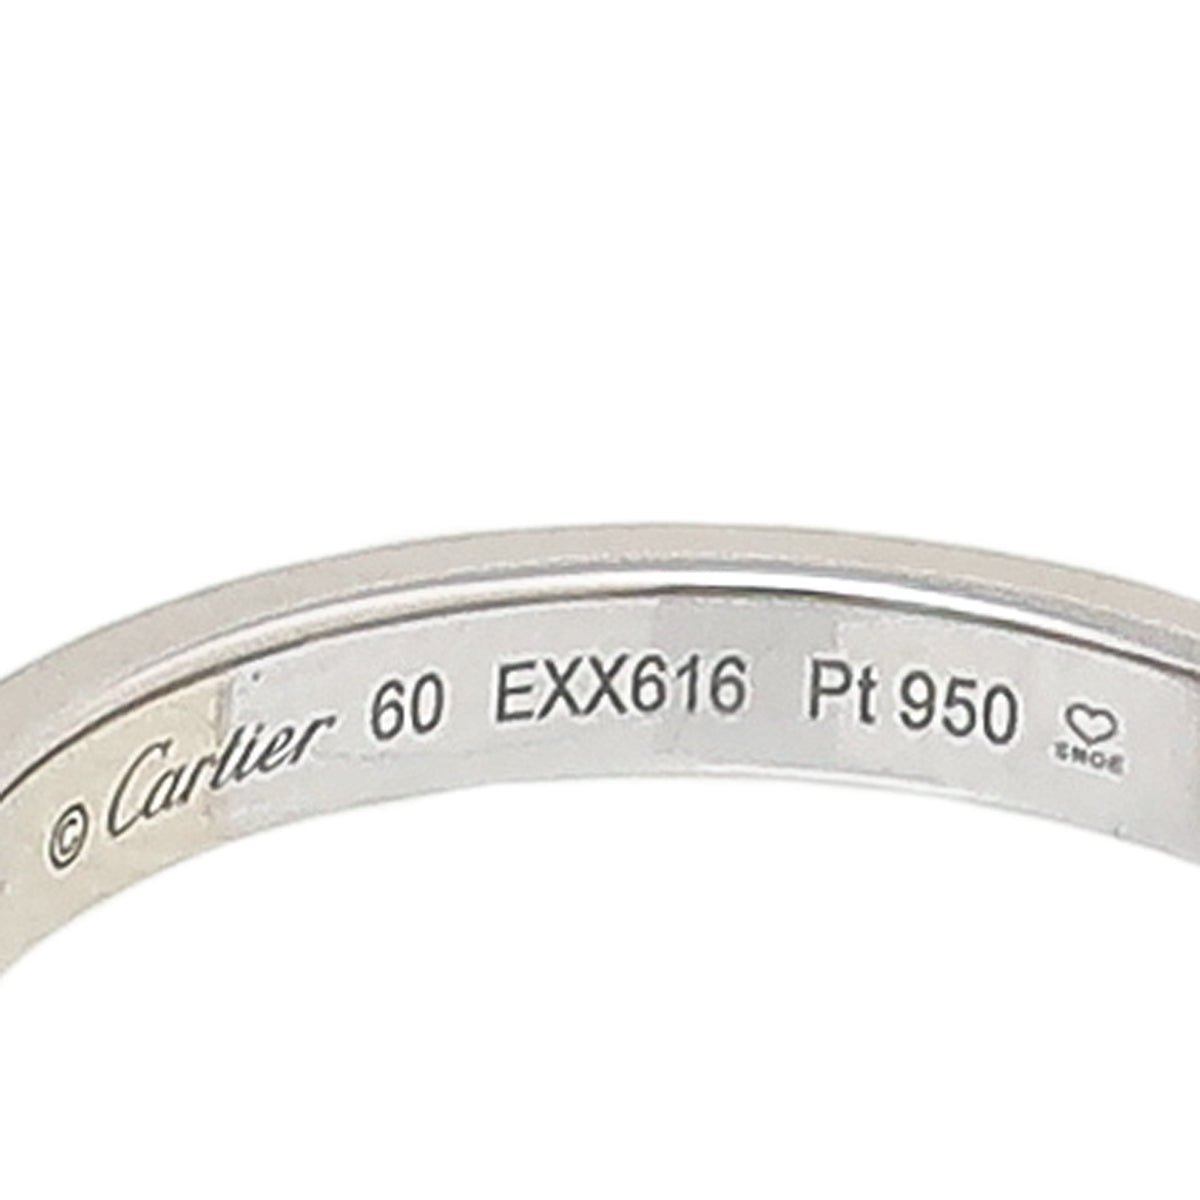 Cartier - Cartier Platinum C De Cartier Wedding Band Ring 60 | The Closet